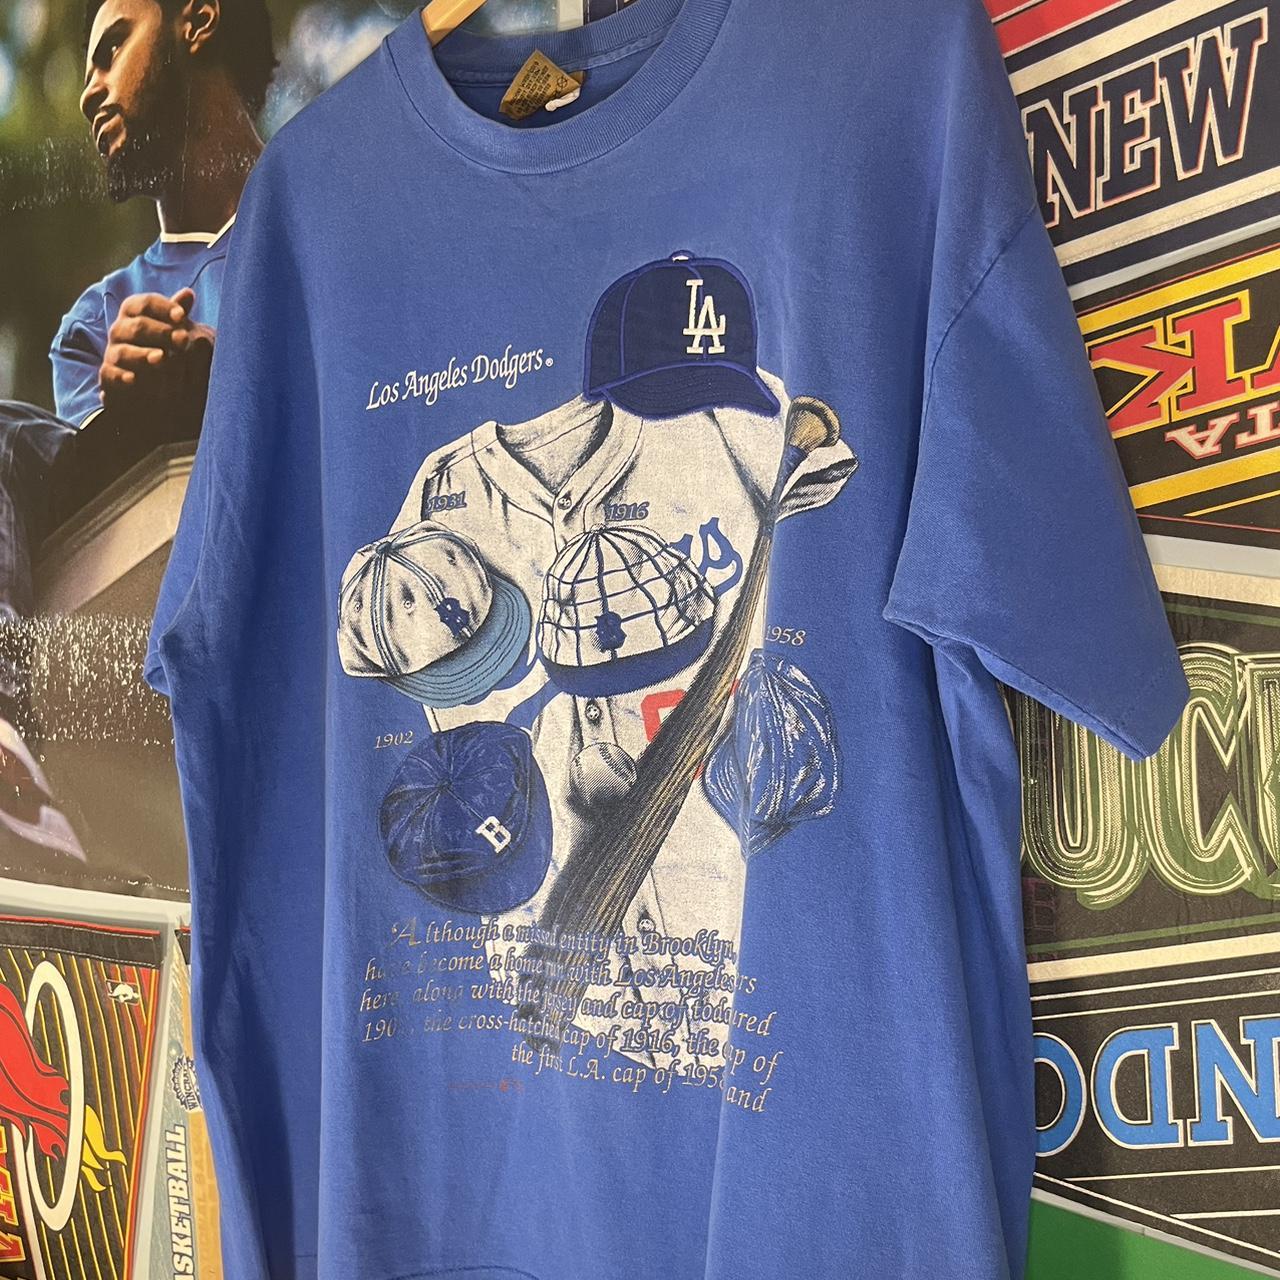 LA Dodgers Grey T-Shirt